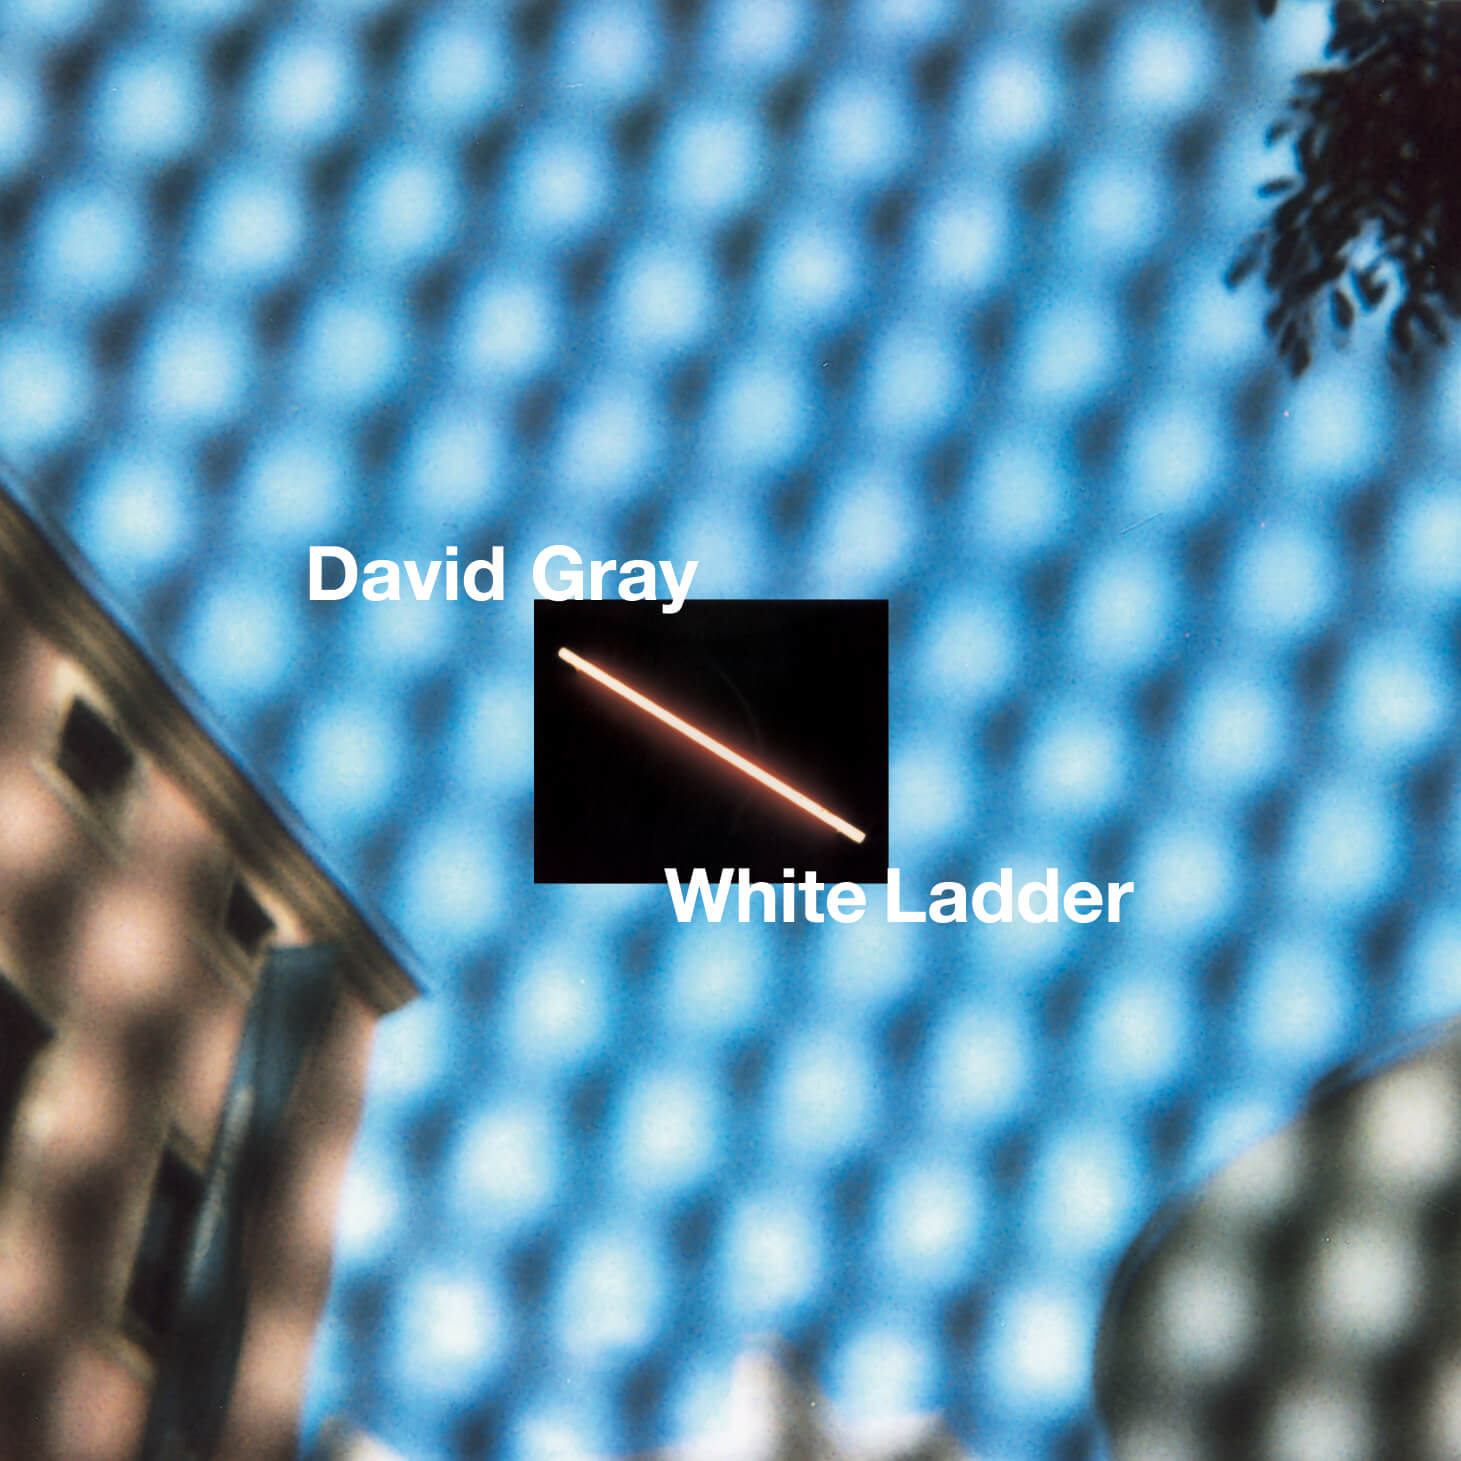 david gray white ladder tour australia